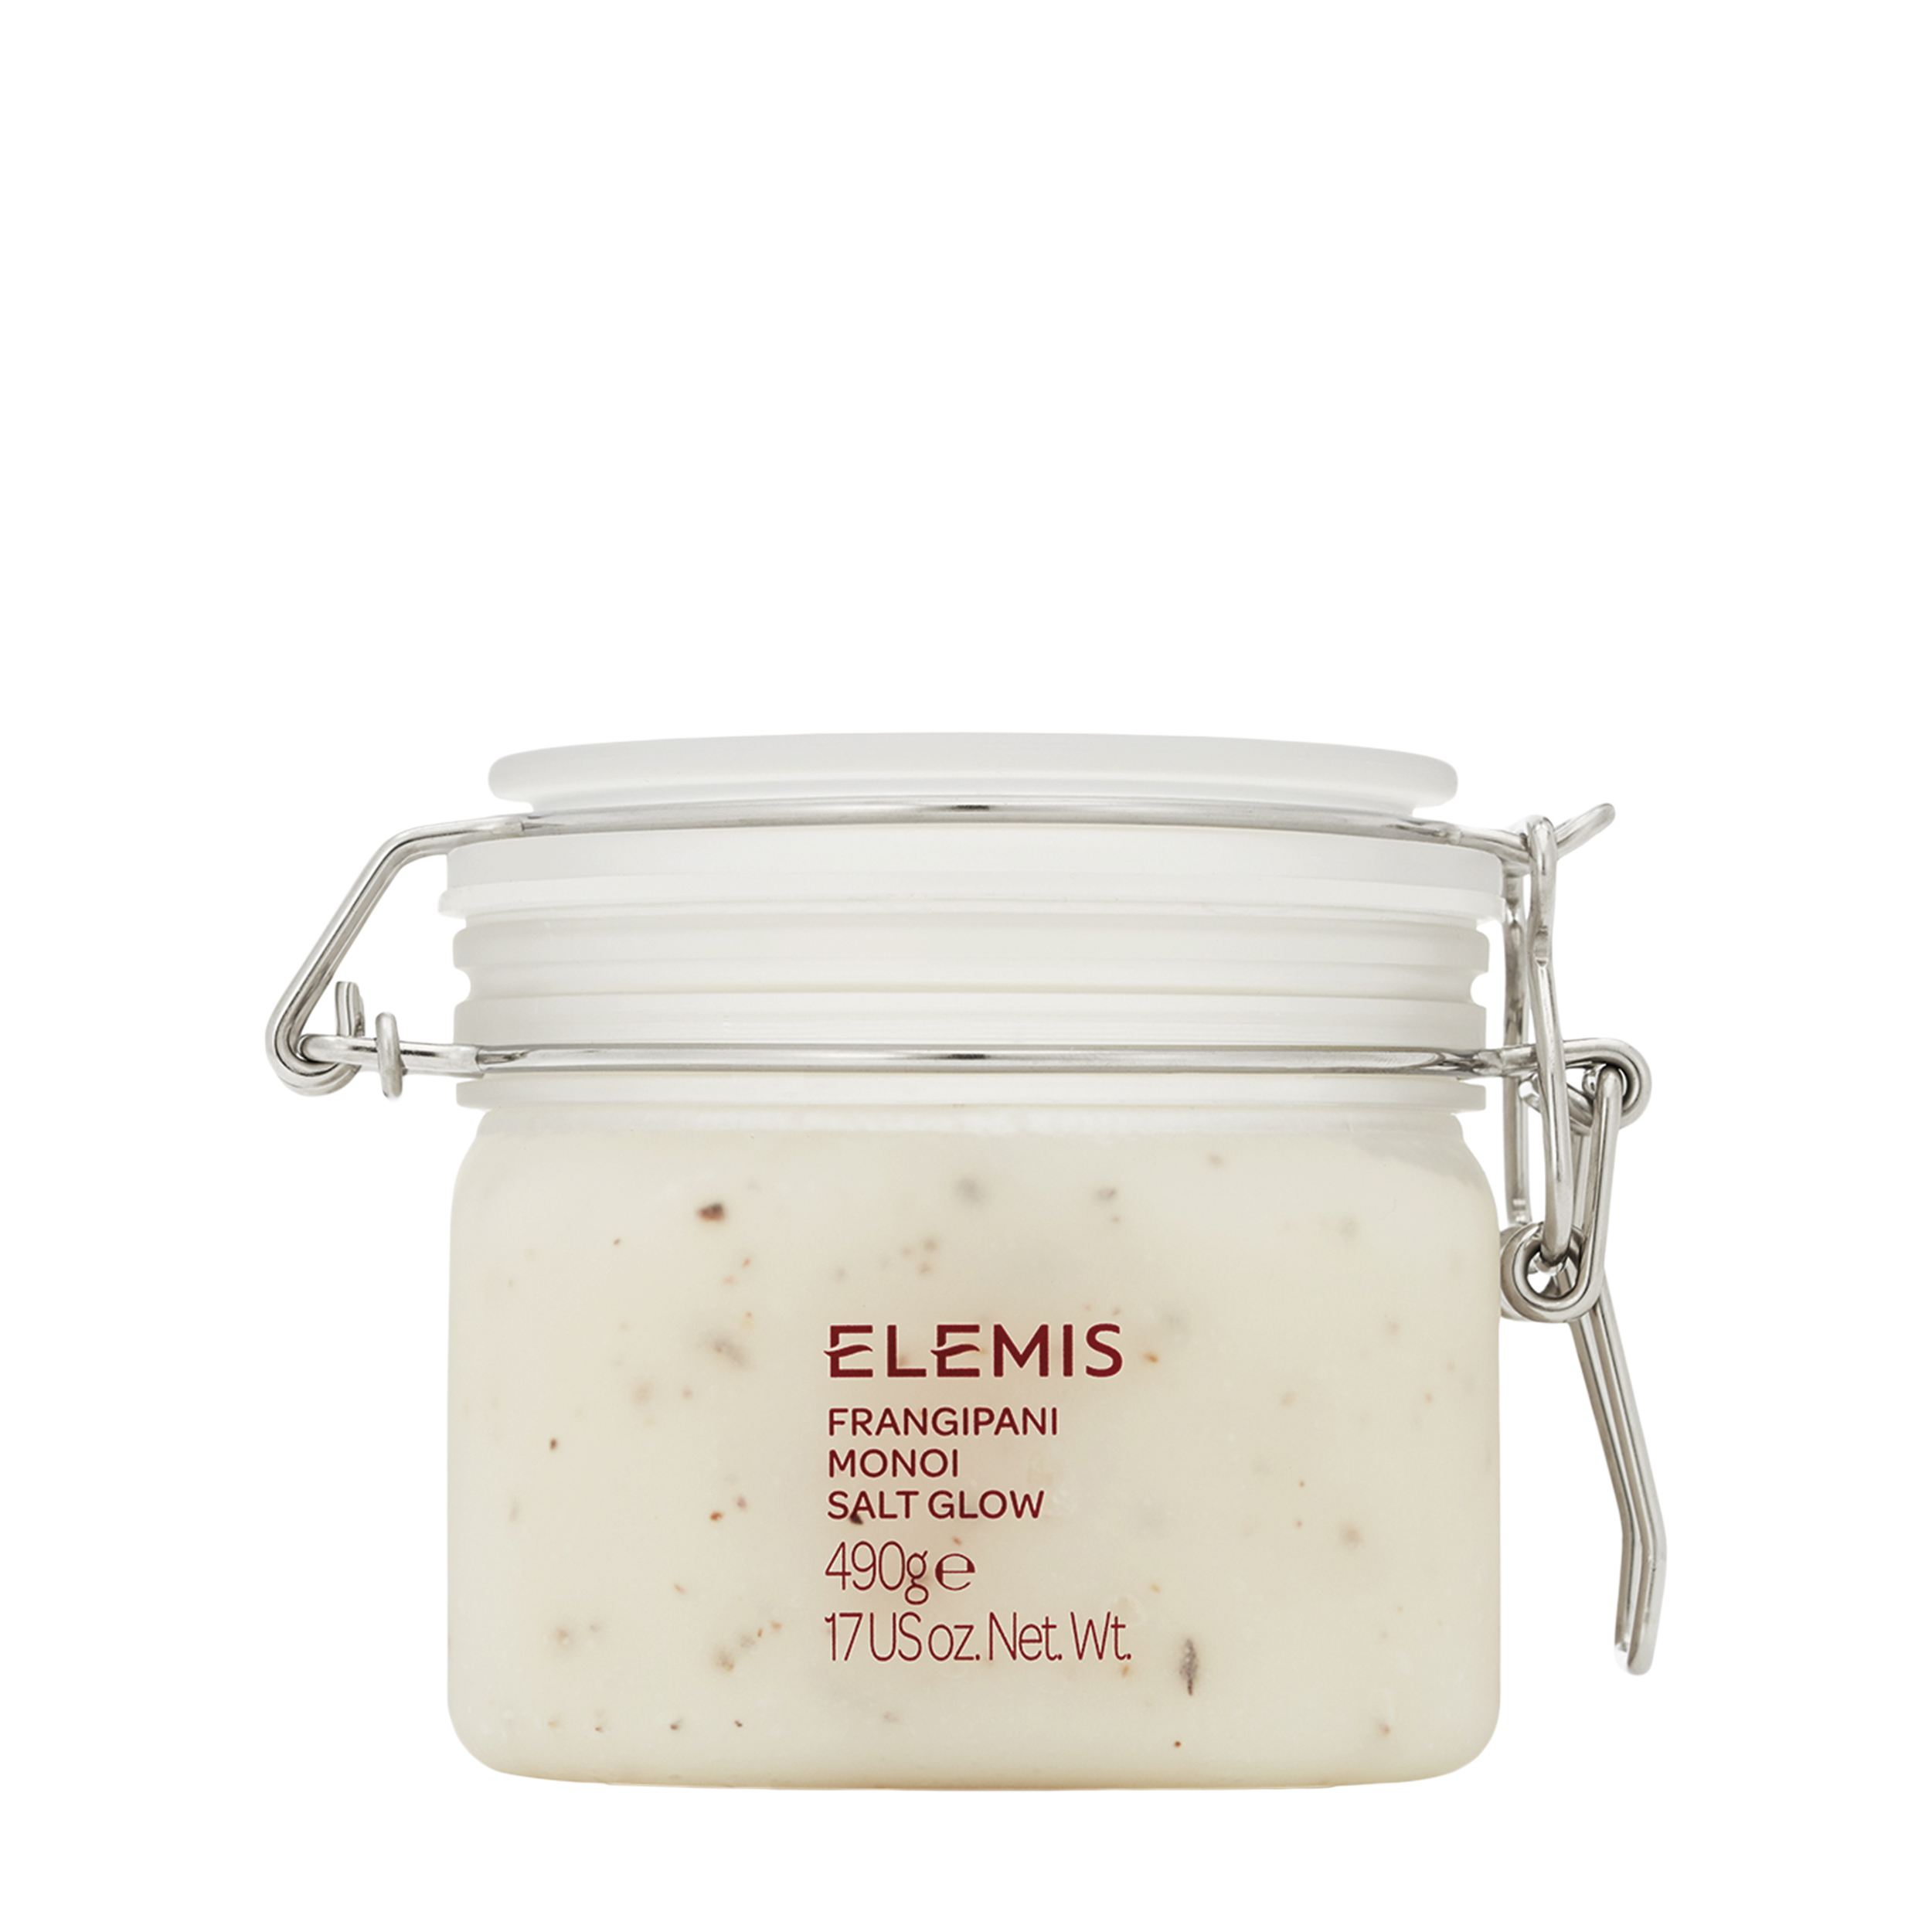 Купить Elemis Elemis Смягчающий солевой скраб для тела Frangipani Monoi Salt Glow 480 гр